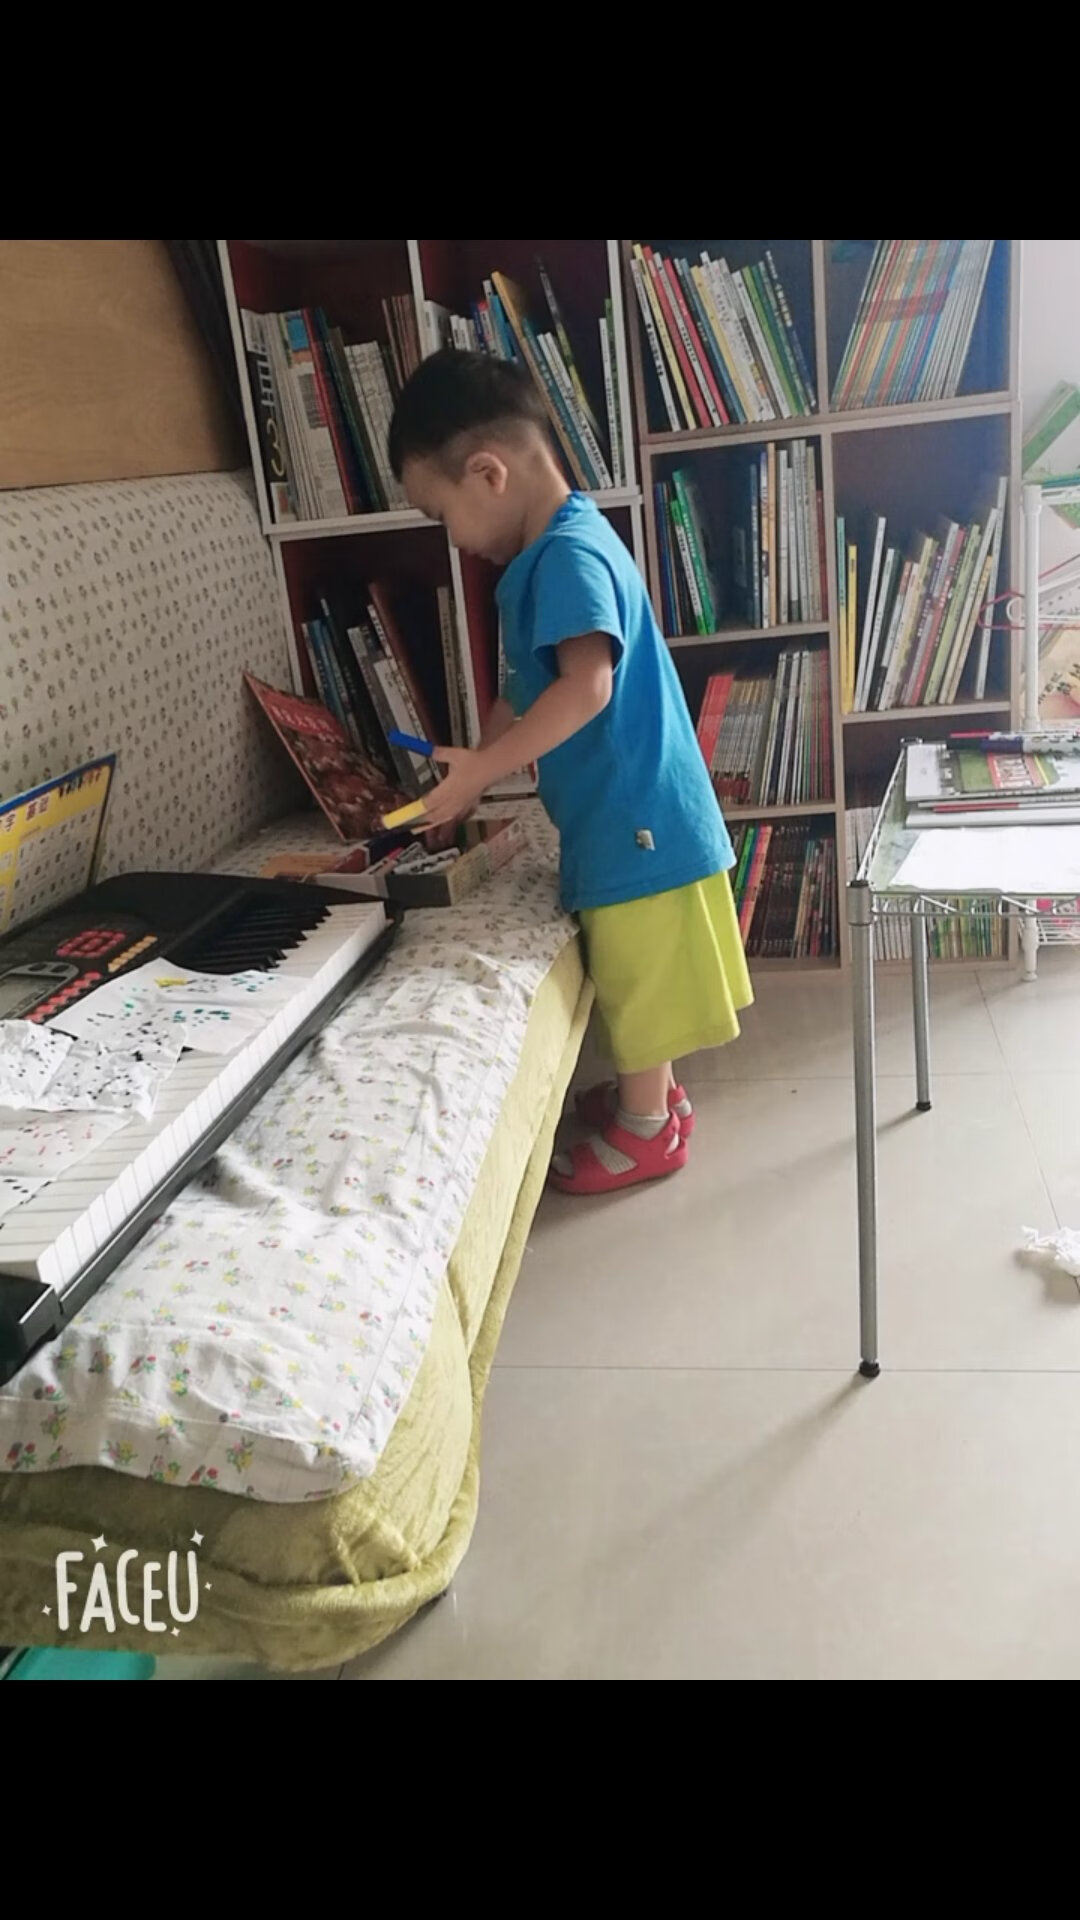 两岁8个月儿子超爱看书、所有绘本都是在上买的、感谢???看书使他聪敏、后面所有的书还会在买、他每天一到吃午饭时间、就坐小板凳上变着法子跟我扯八、积极地拿勺子指着书架：“妈妈我想要看那本书…想要看恐龙的书…你讲故事给我听吧……”（我赶紧点头拿起书…又淡定放下：“吃完再看”）九、很干脆的：“妈妈我要拉屎? ”（跑厕所蹲一分钟就起身念叨：“没有了就起来～”然后裤衩歪歪地走出厕所对我重复着：“没有了就起来”……）十、屁颠跑过来够着菜板边往我怀里钻：“妈妈我想当你的小帮手…我也要切菜……”（小兔崽子差点又被他感动…）十一、撒娇着：“嗯额…妈妈我有点累了感觉好困…想睡觉妈妈……”（平时眼睛都困得睁不开时问他、他都闭着眼说不要睡觉的）